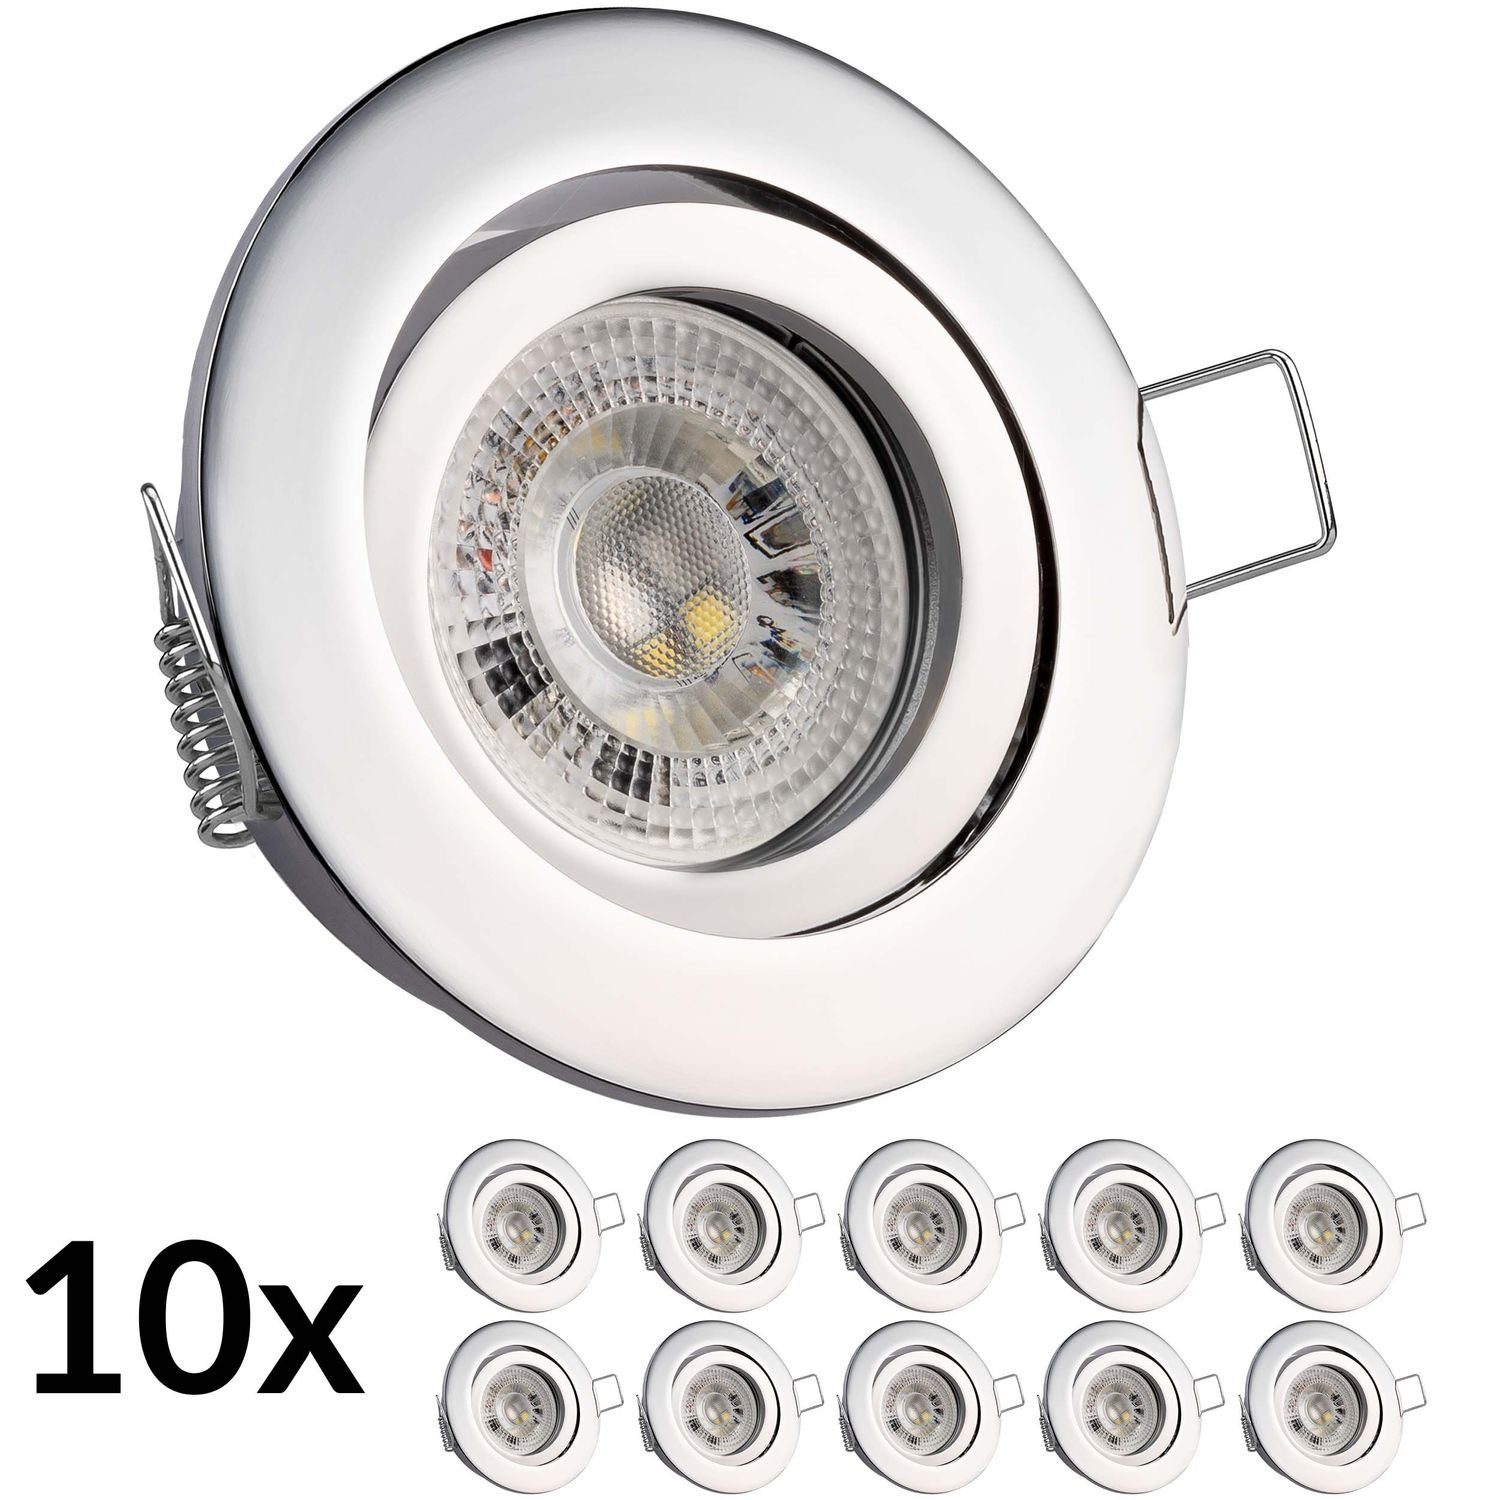 Einbaustrahler LED GU10 RGB - Einbaustrahler Set 3W mit von LEDANDO in chrom 10er LED LEDANDO LED